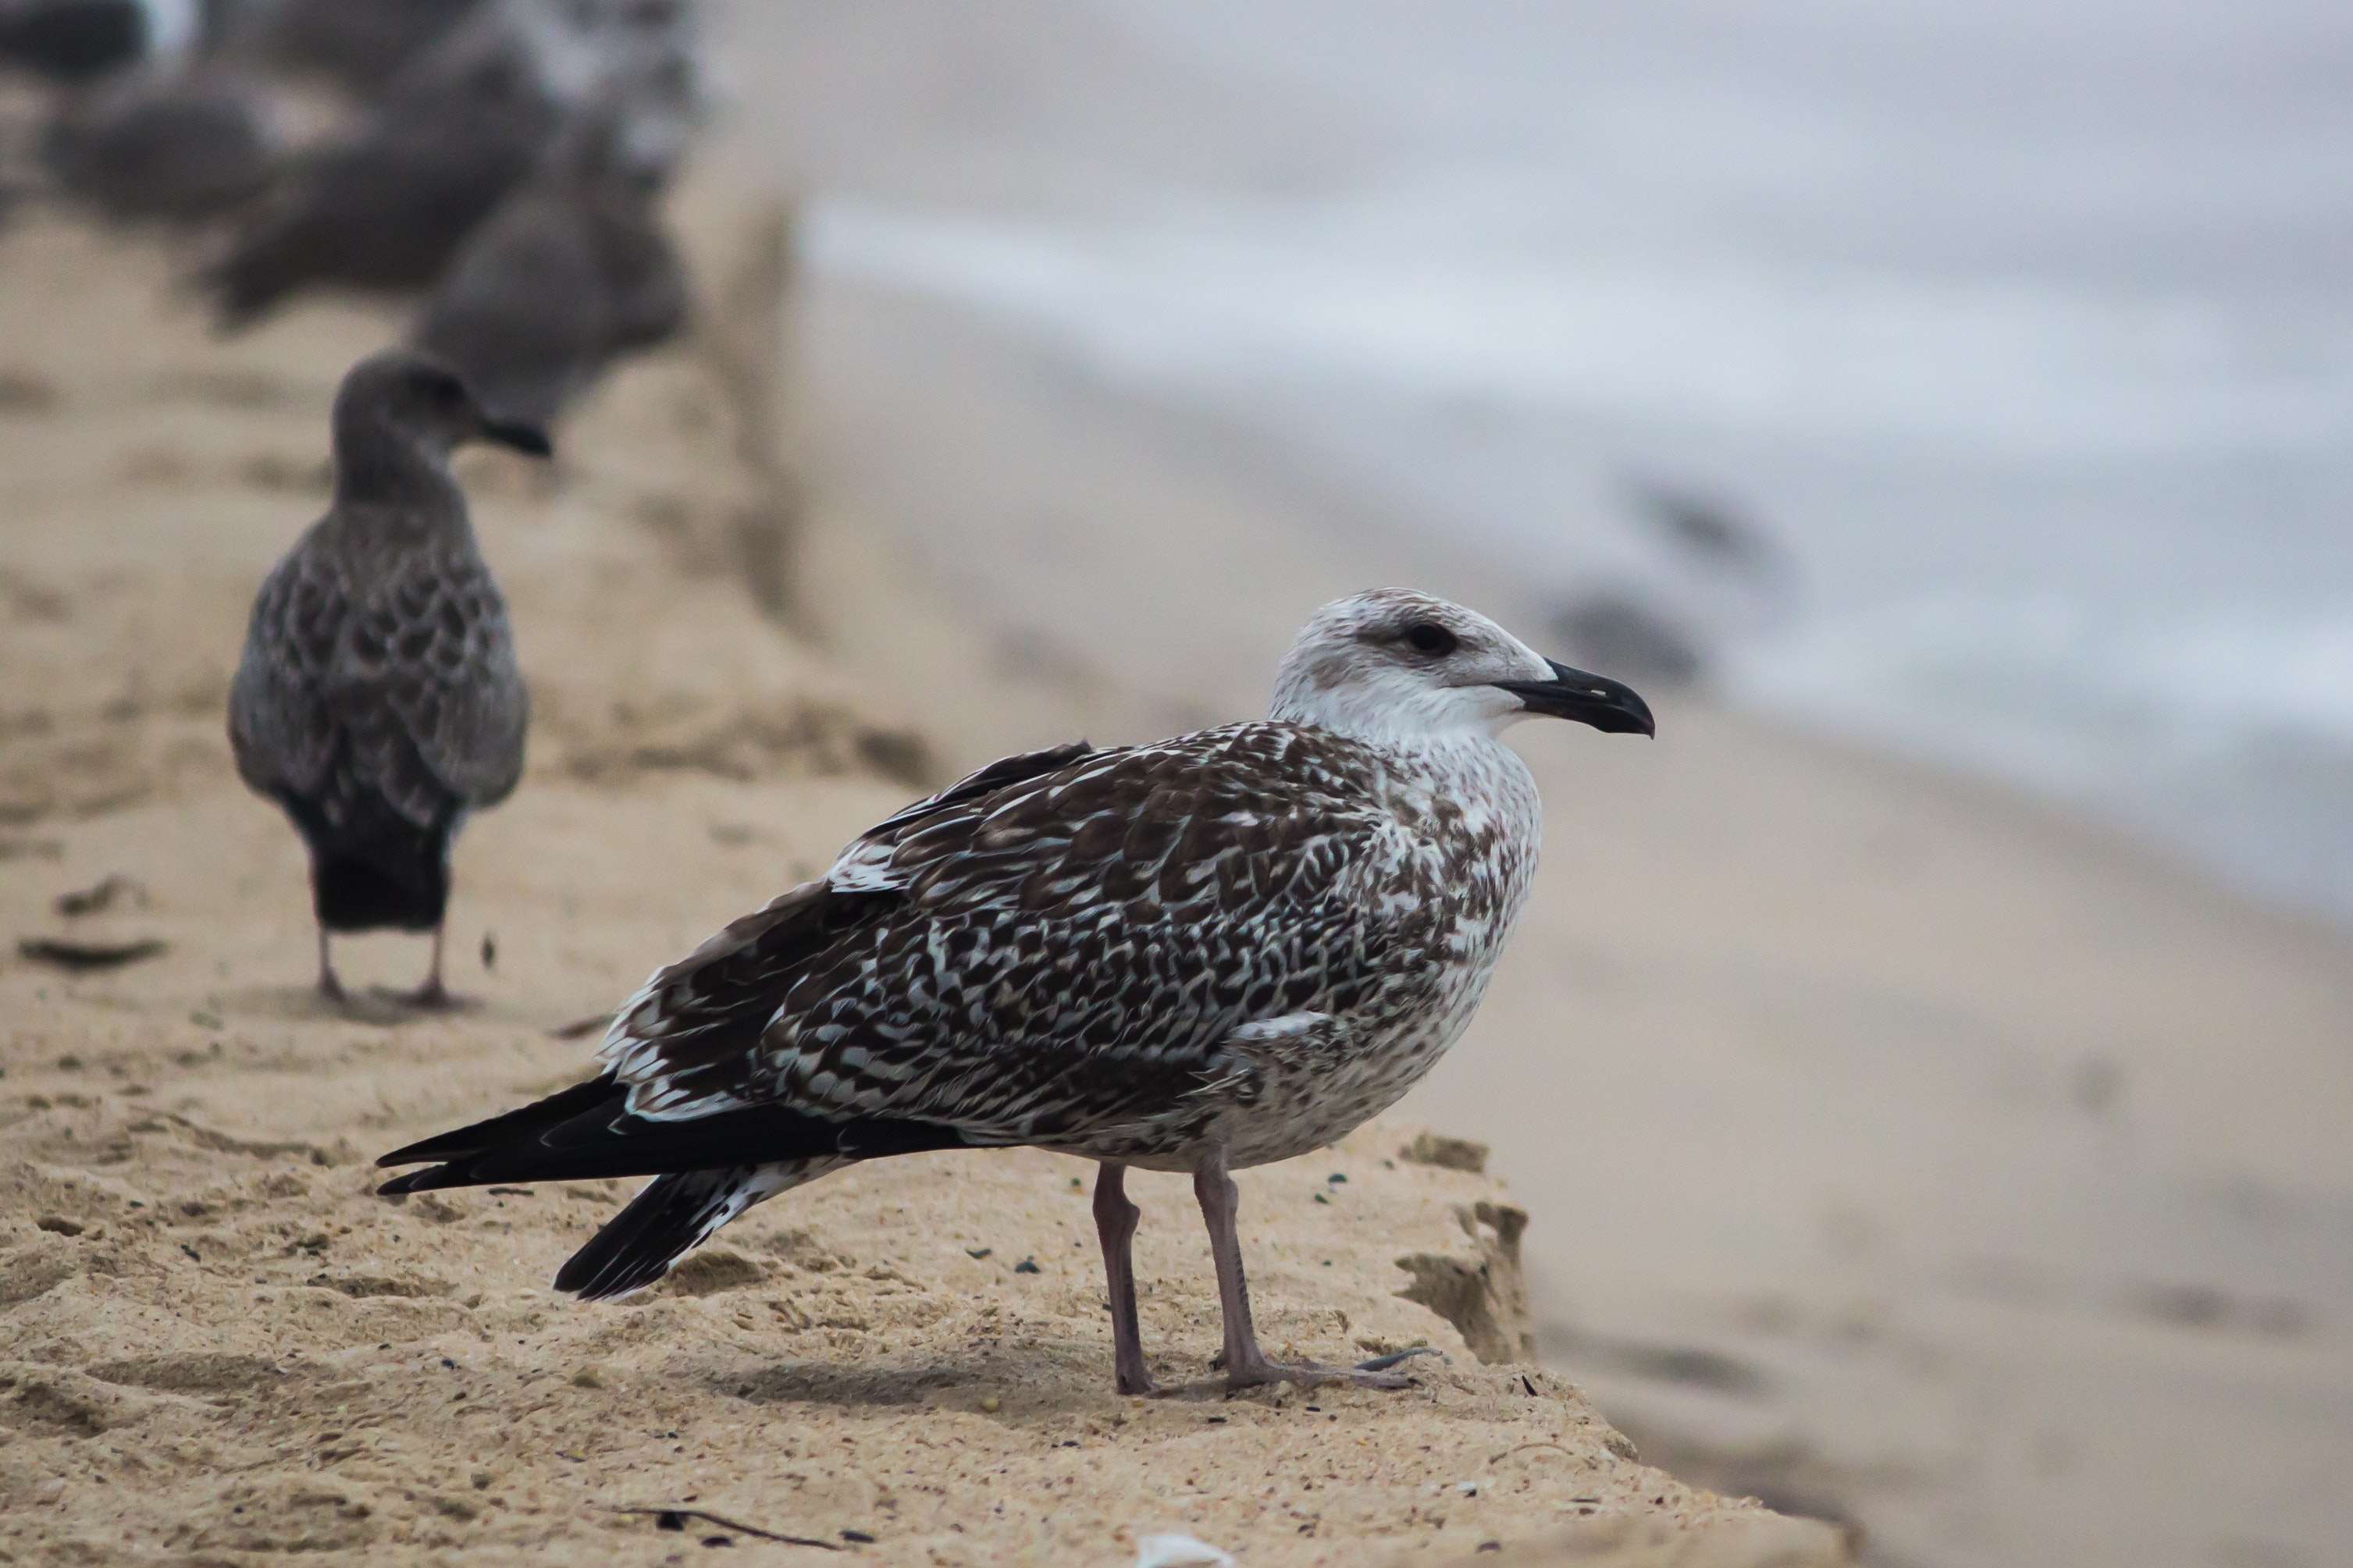 Black and White Bird on Brown Sand, Animals, Avian, Beach, Beak, HQ Photo